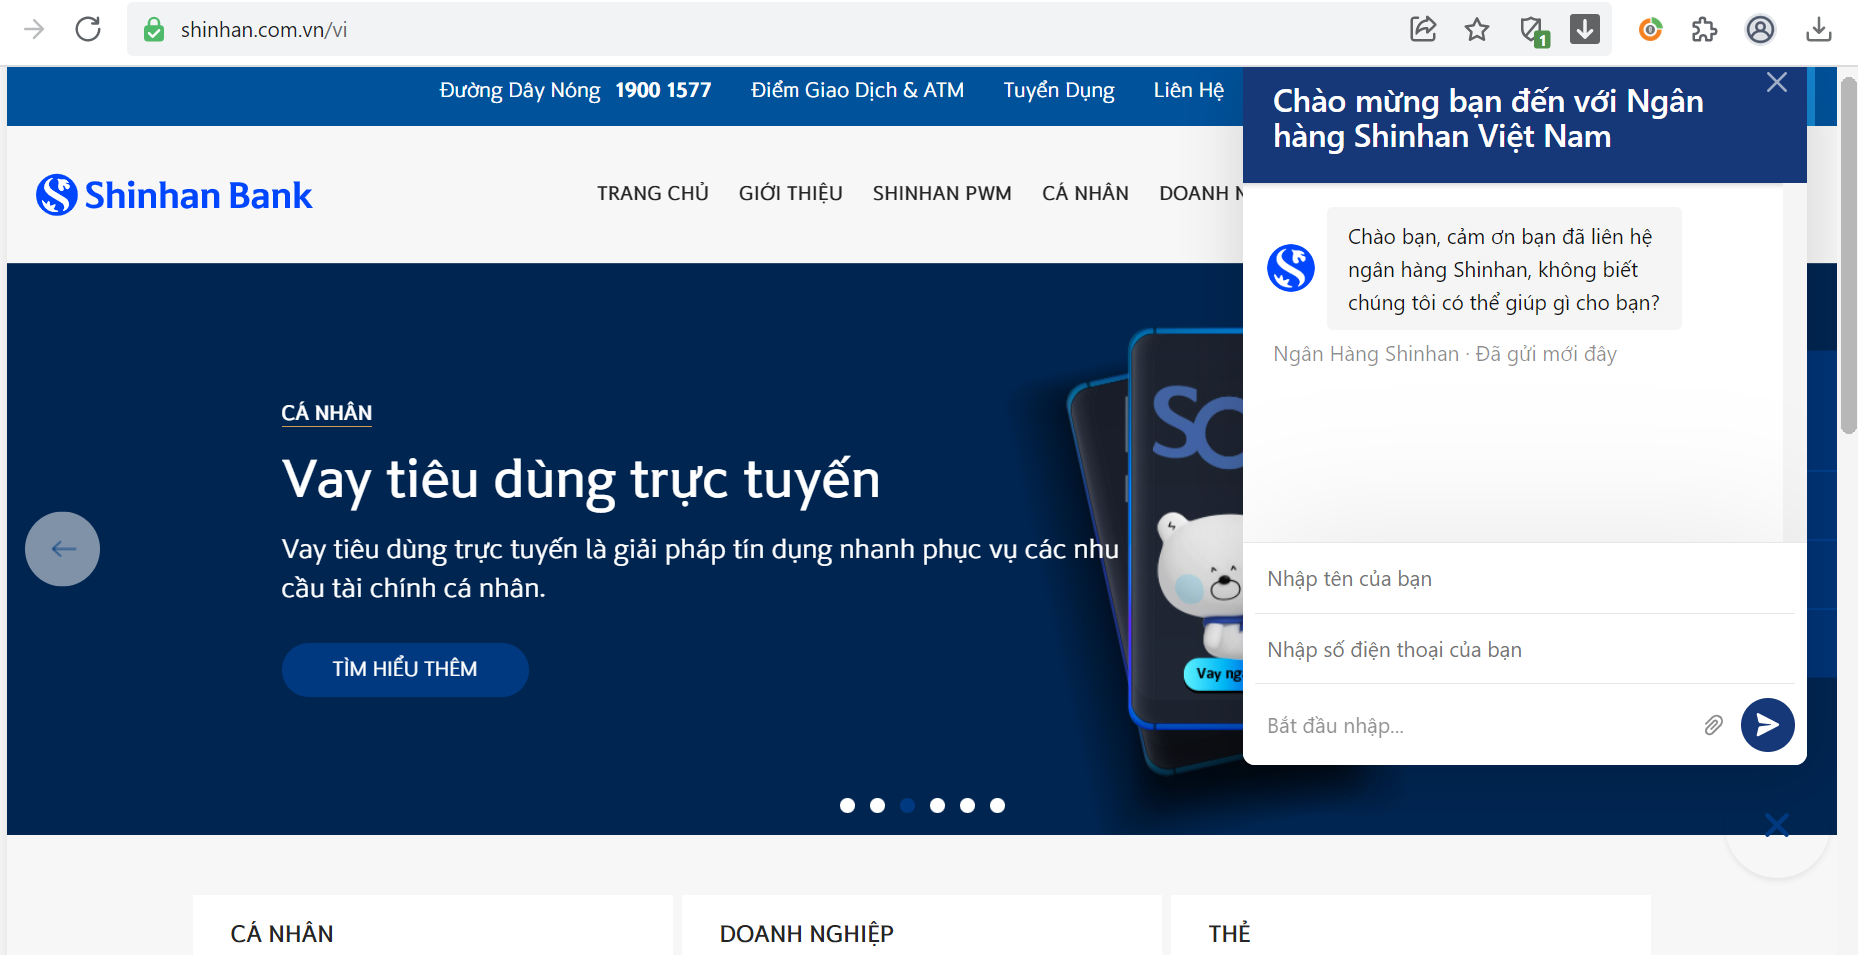 Khách hàng có thể liên lạc với ngân hàng Shinhan Bank Việt Nam theo những kênh nào nữa?